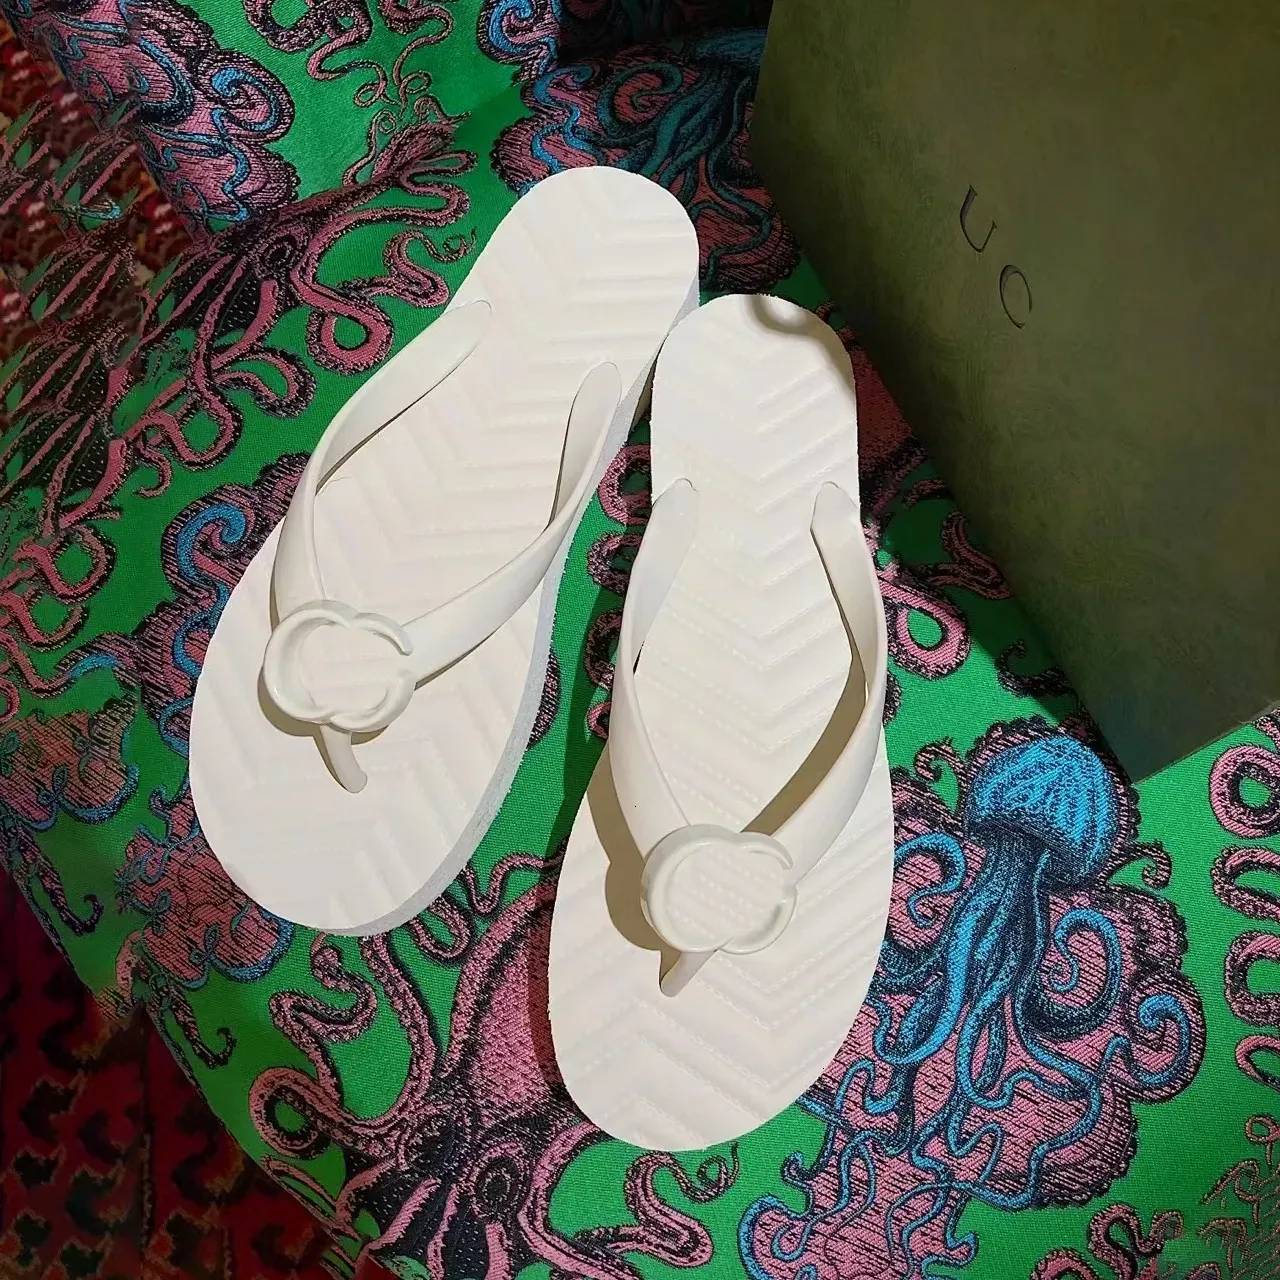 espuma de luxo chevron projeta chinelos tanga sandália mulher designer sapato homem slide assinatura fácil de usar praia ao ar livre chinelo deslizamento em chinelos